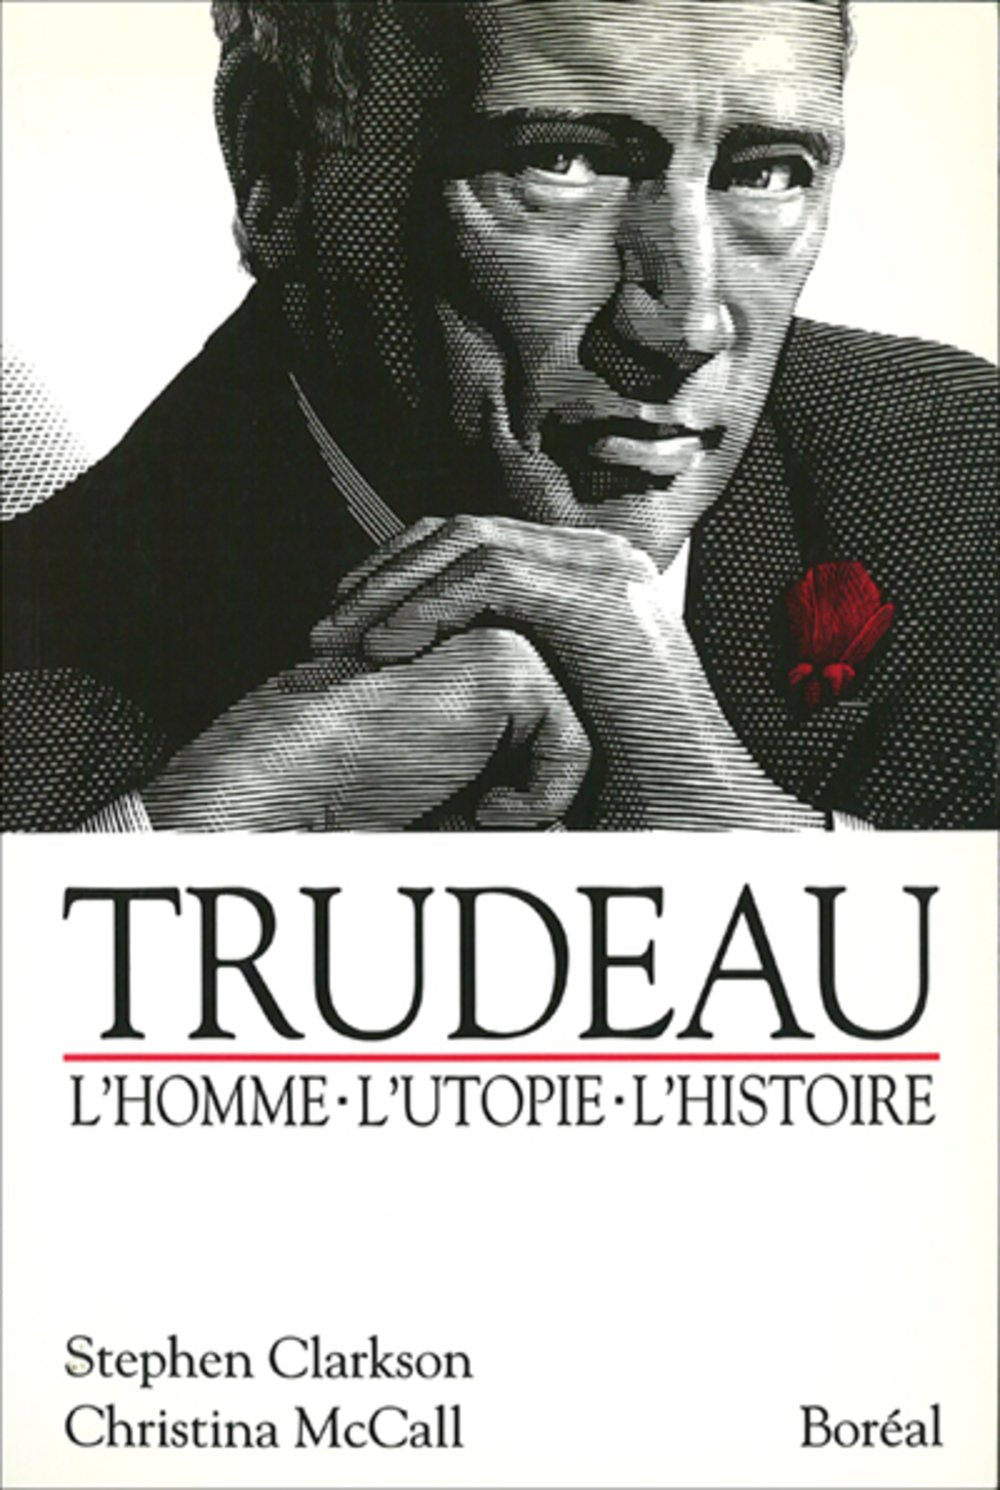 Trudeau: l'homme, l'utopie, l'histoire - Stephen Clarkson